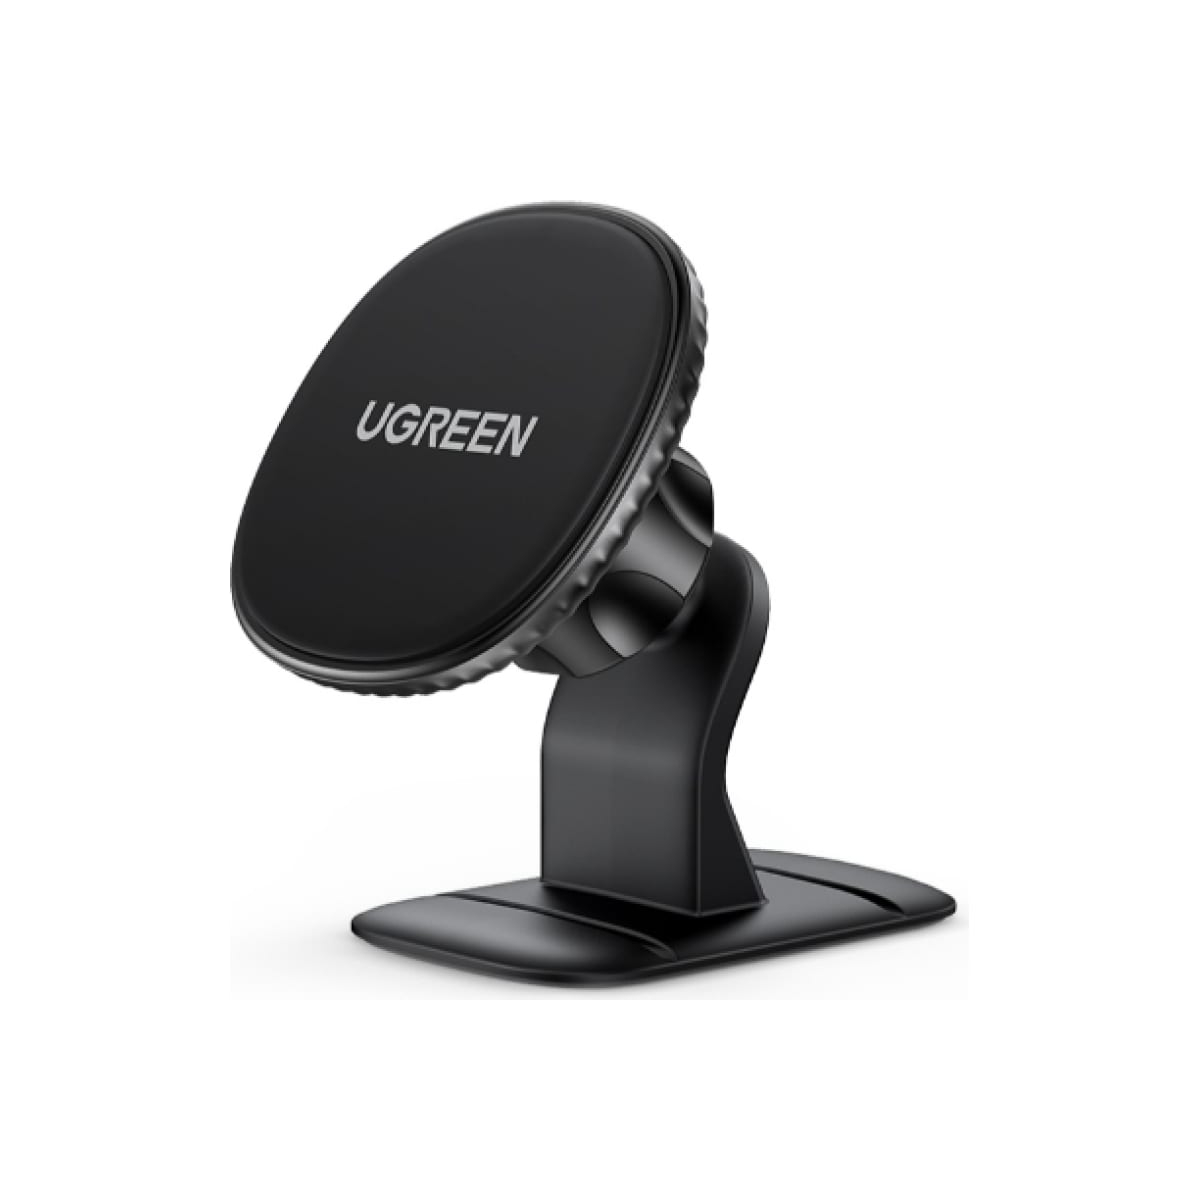 Автомобильный держатель для телефона UGREEN на панель, черный (80785) держатель ugreen магнитный на панель 80785